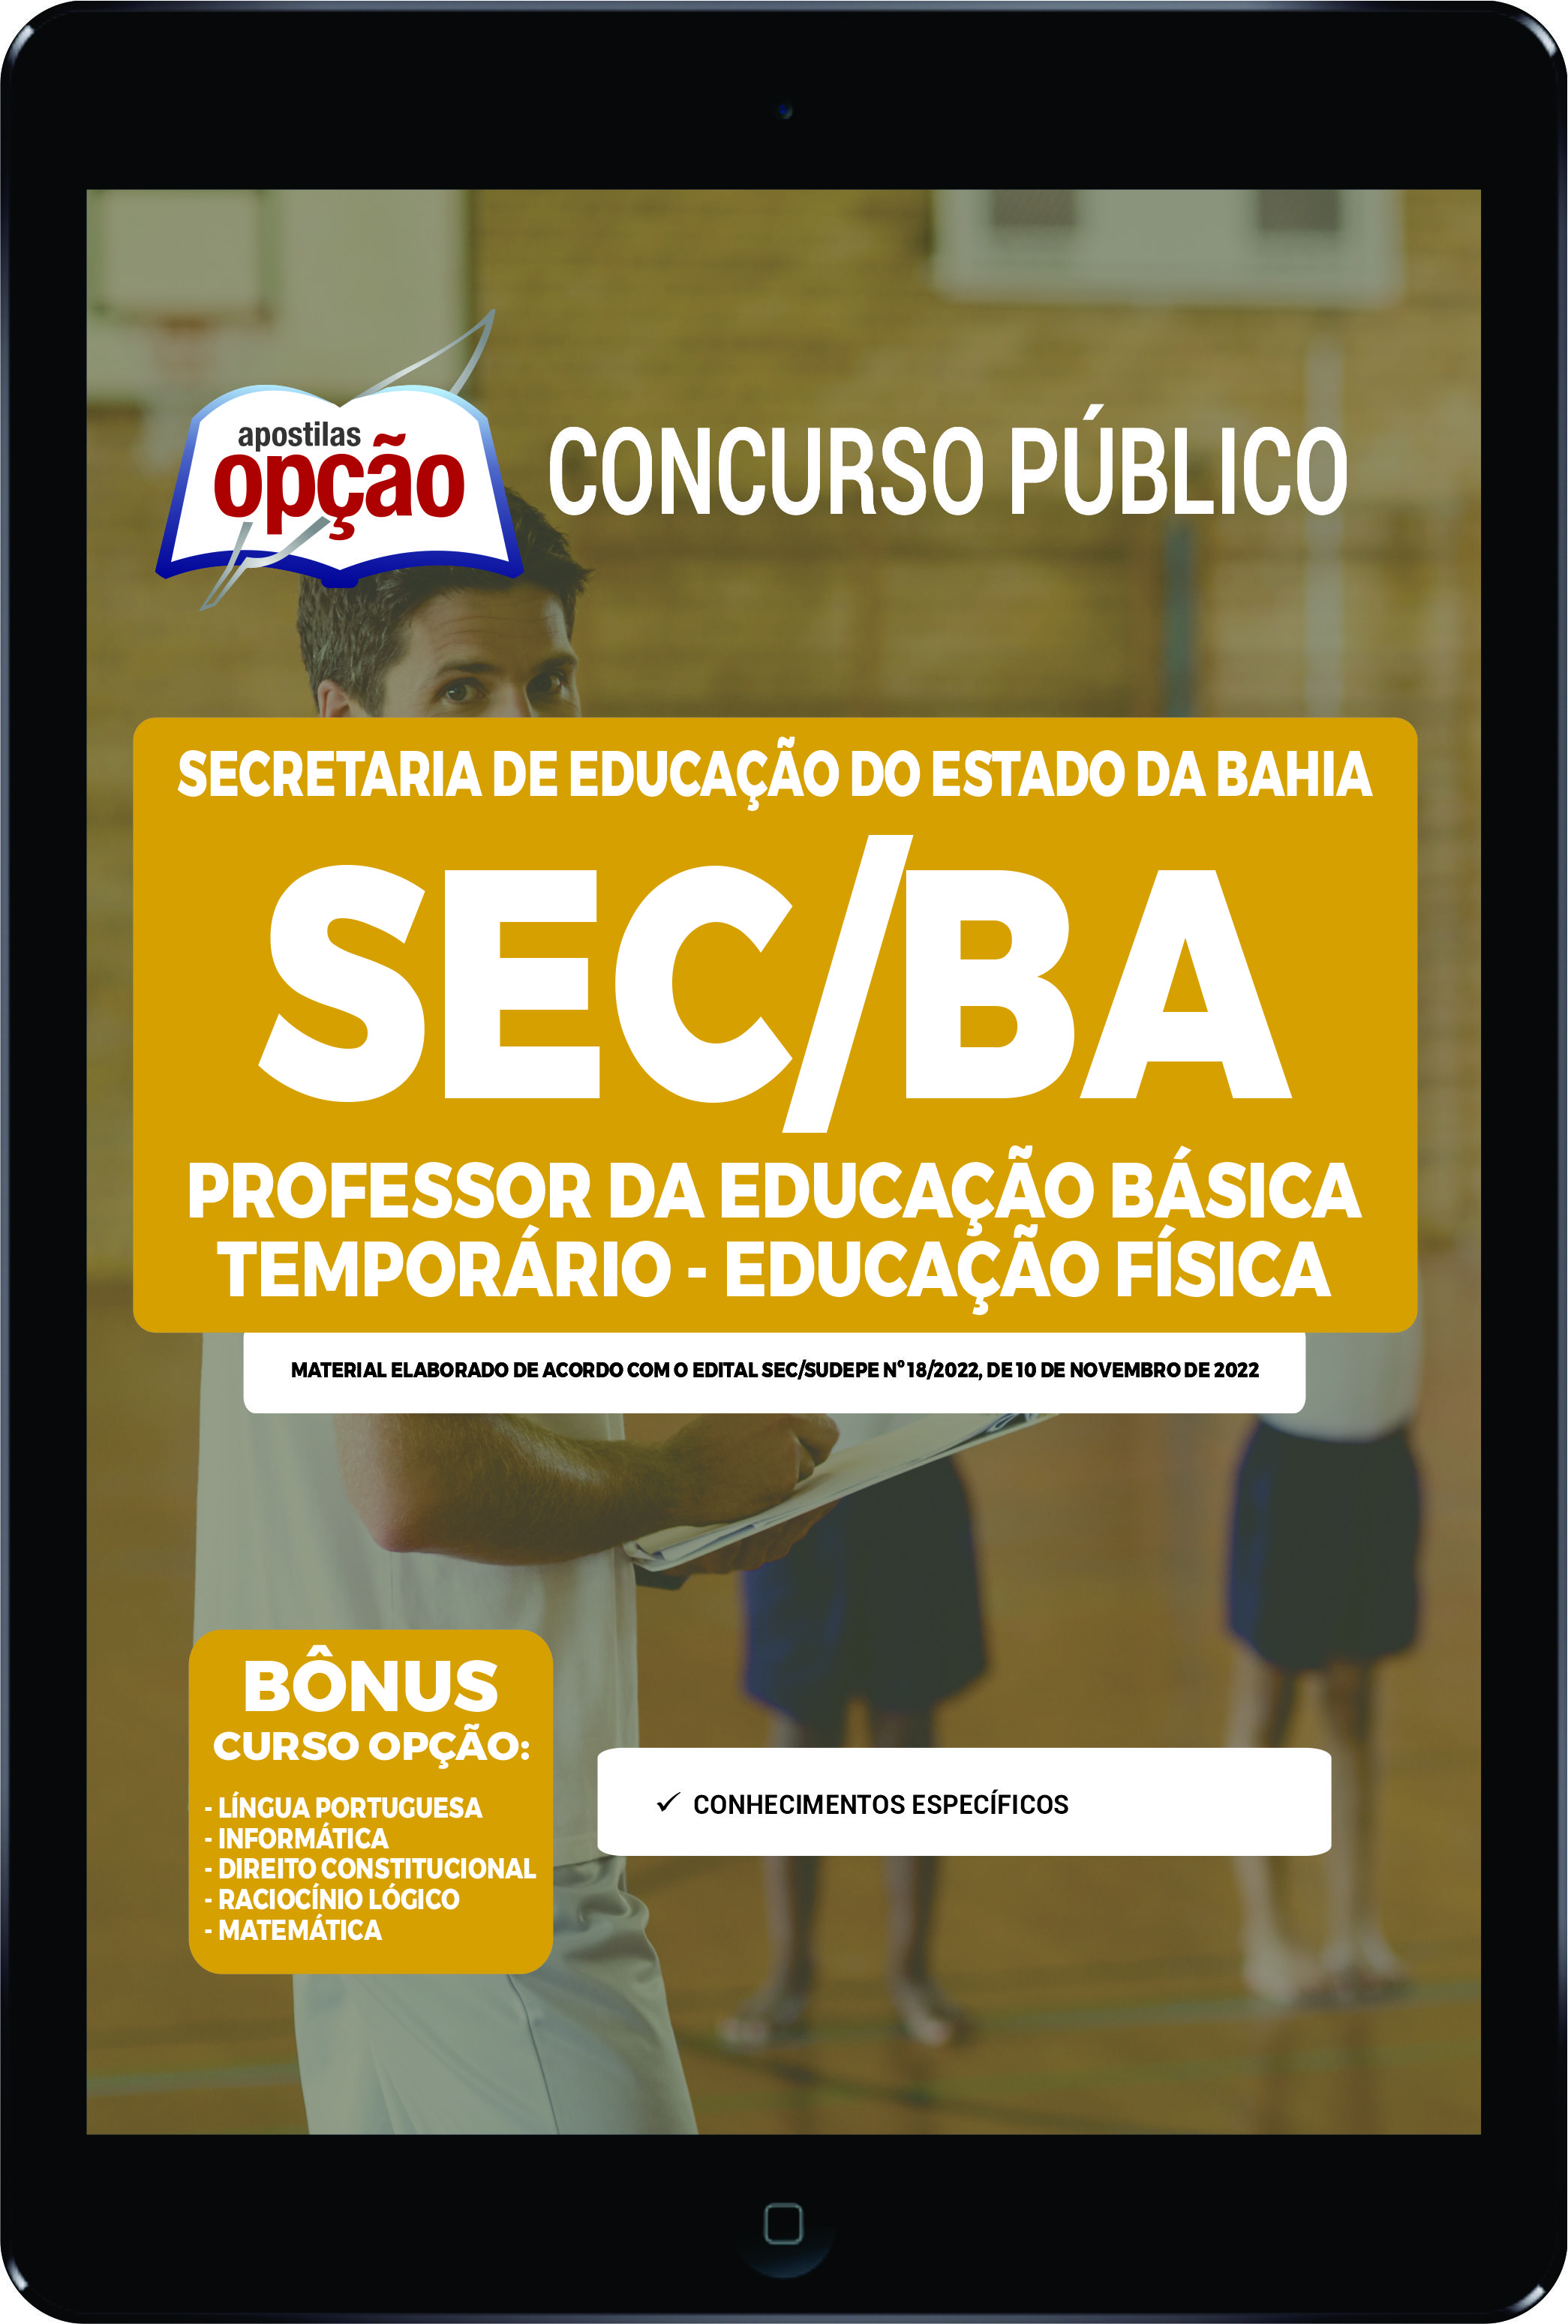 Apostila SEC-BA PDF - PEB Temporário - Educação Física 2022